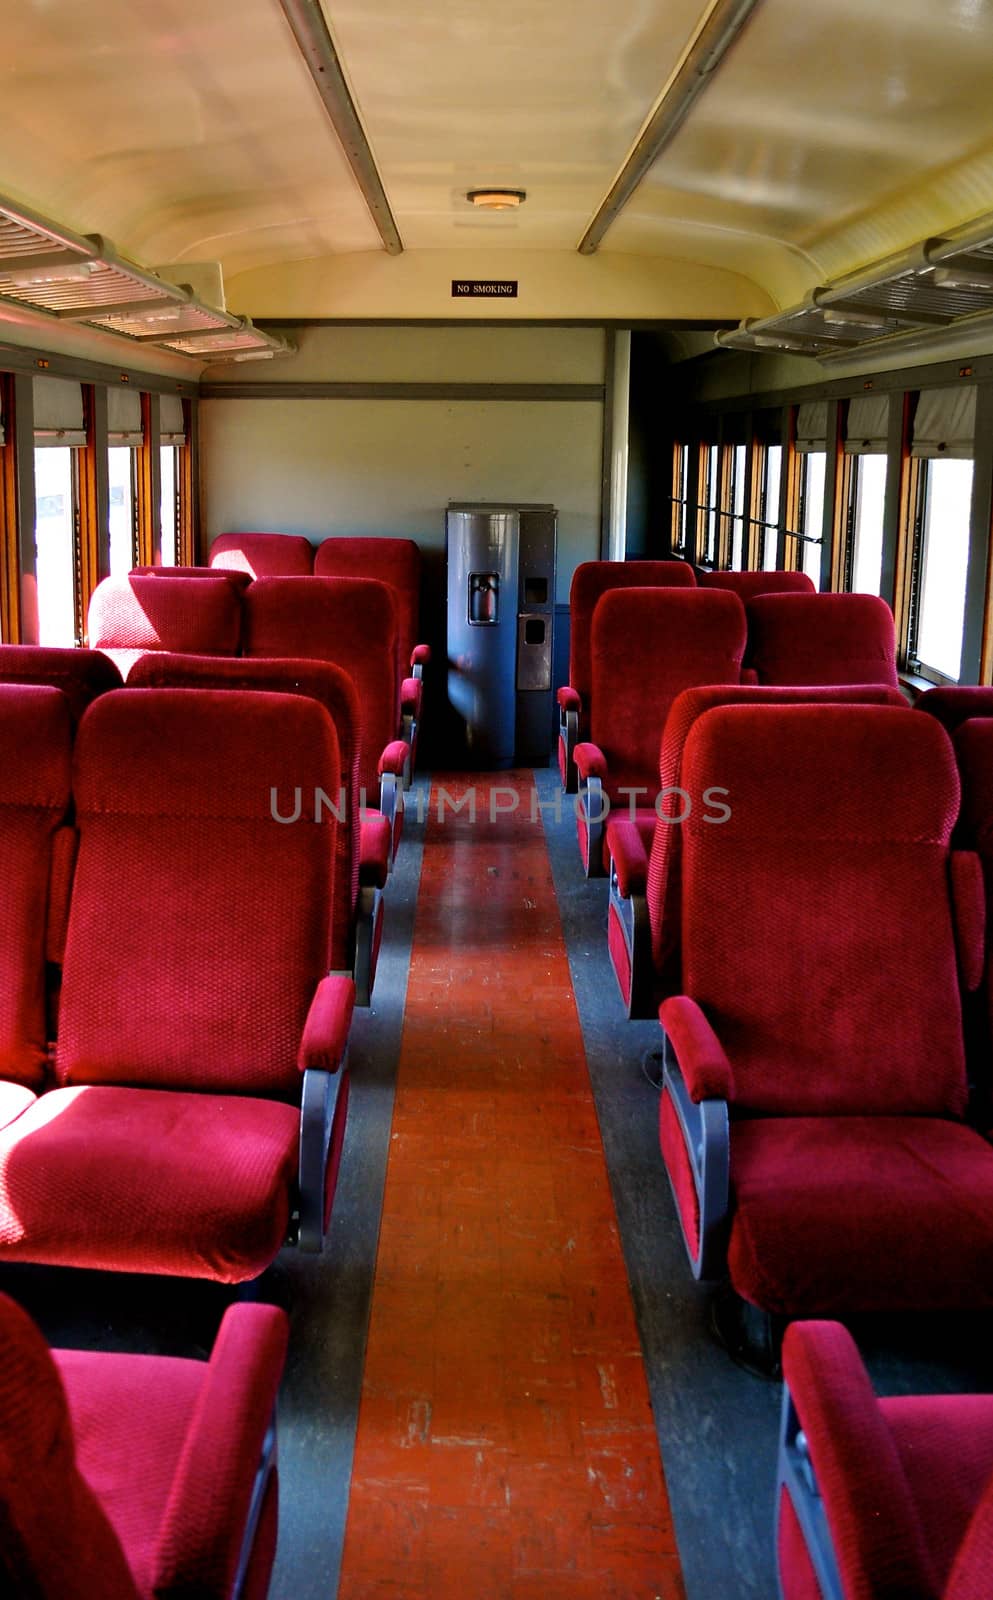 Inside Rail Car
